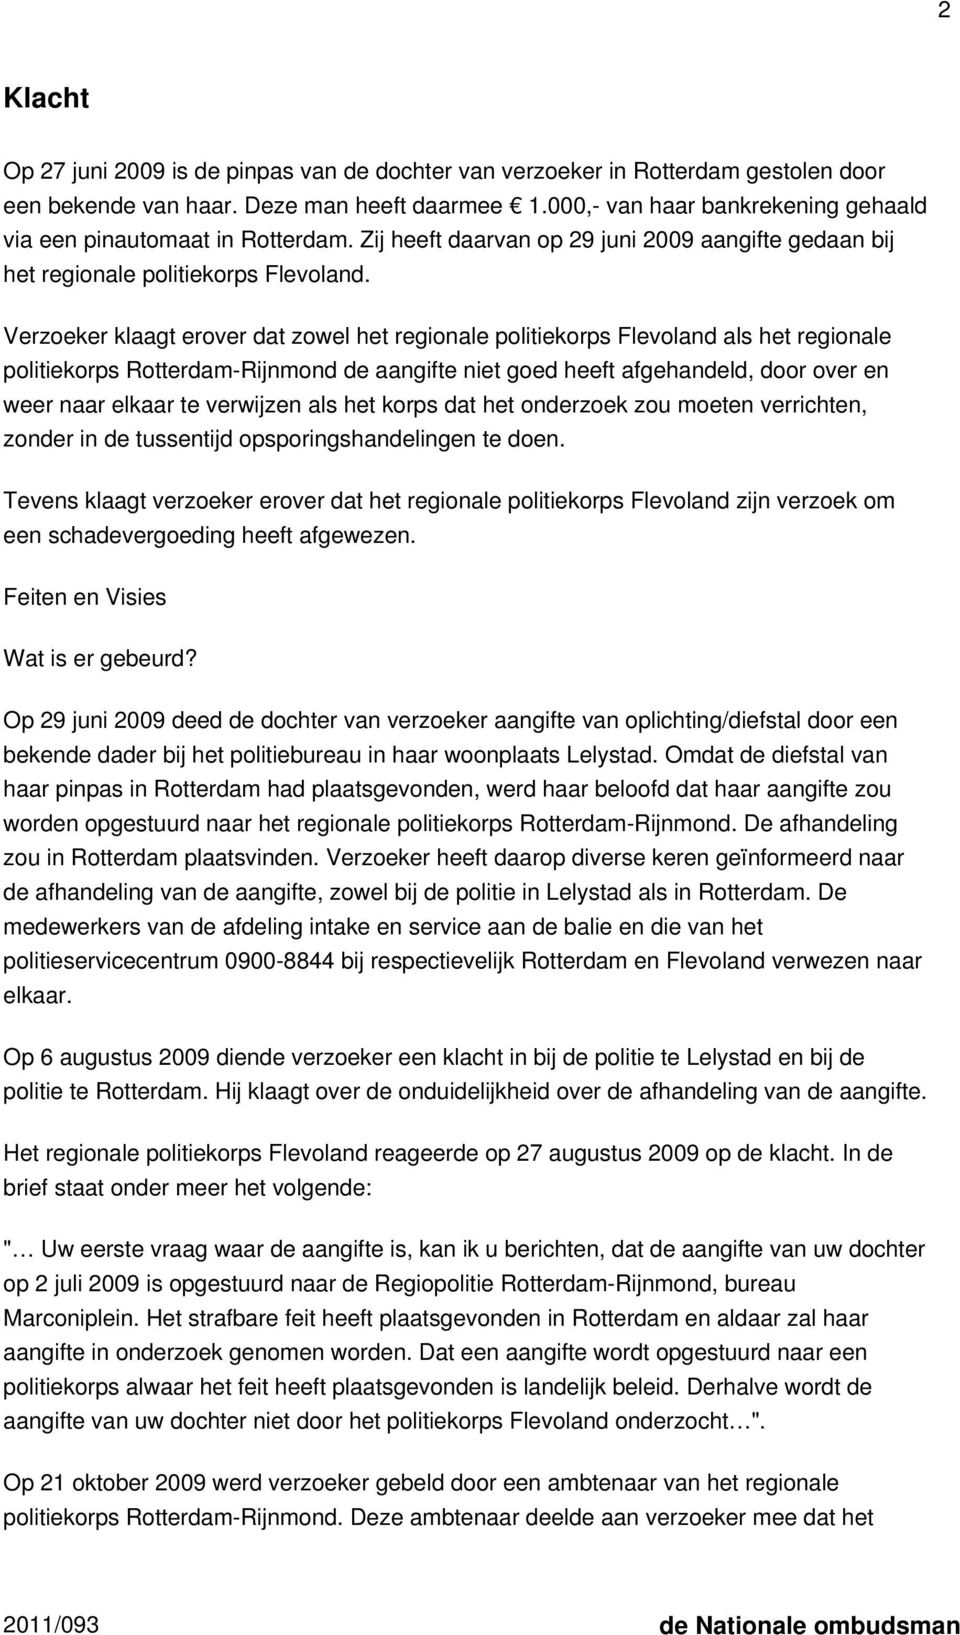 Verzoeker klaagt erover dat zowel het regionale politiekorps Flevoland als het regionale politiekorps Rotterdam-Rijnmond de aangifte niet goed heeft afgehandeld, door over en weer naar elkaar te